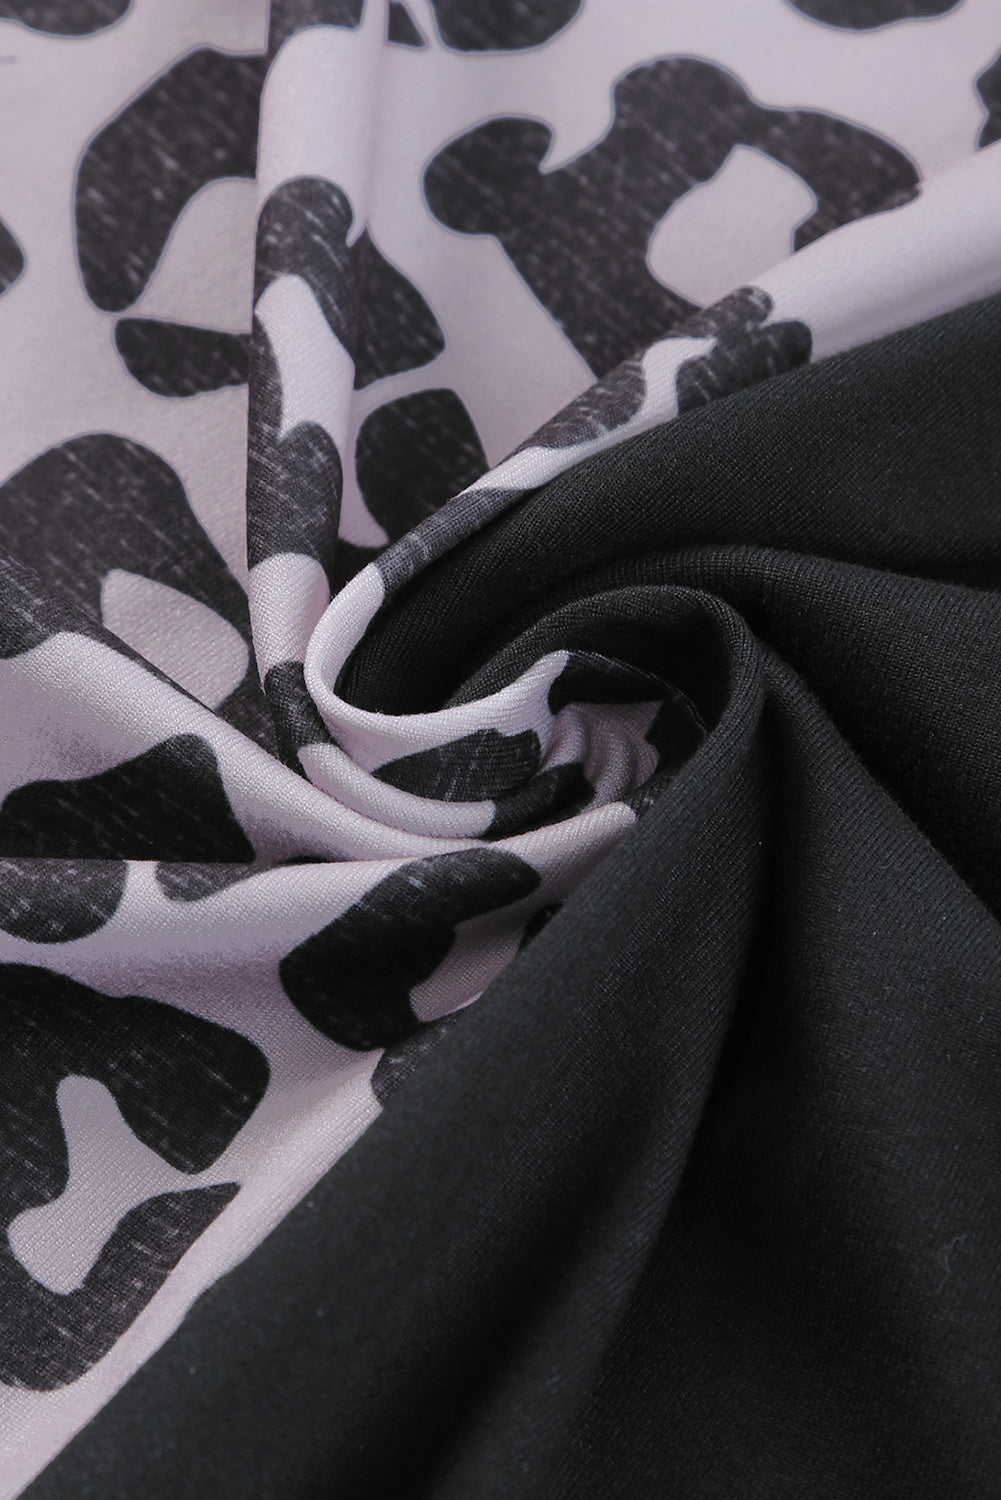 Grey Leopard Print Short Sleeve Side Slits Pocket Dress